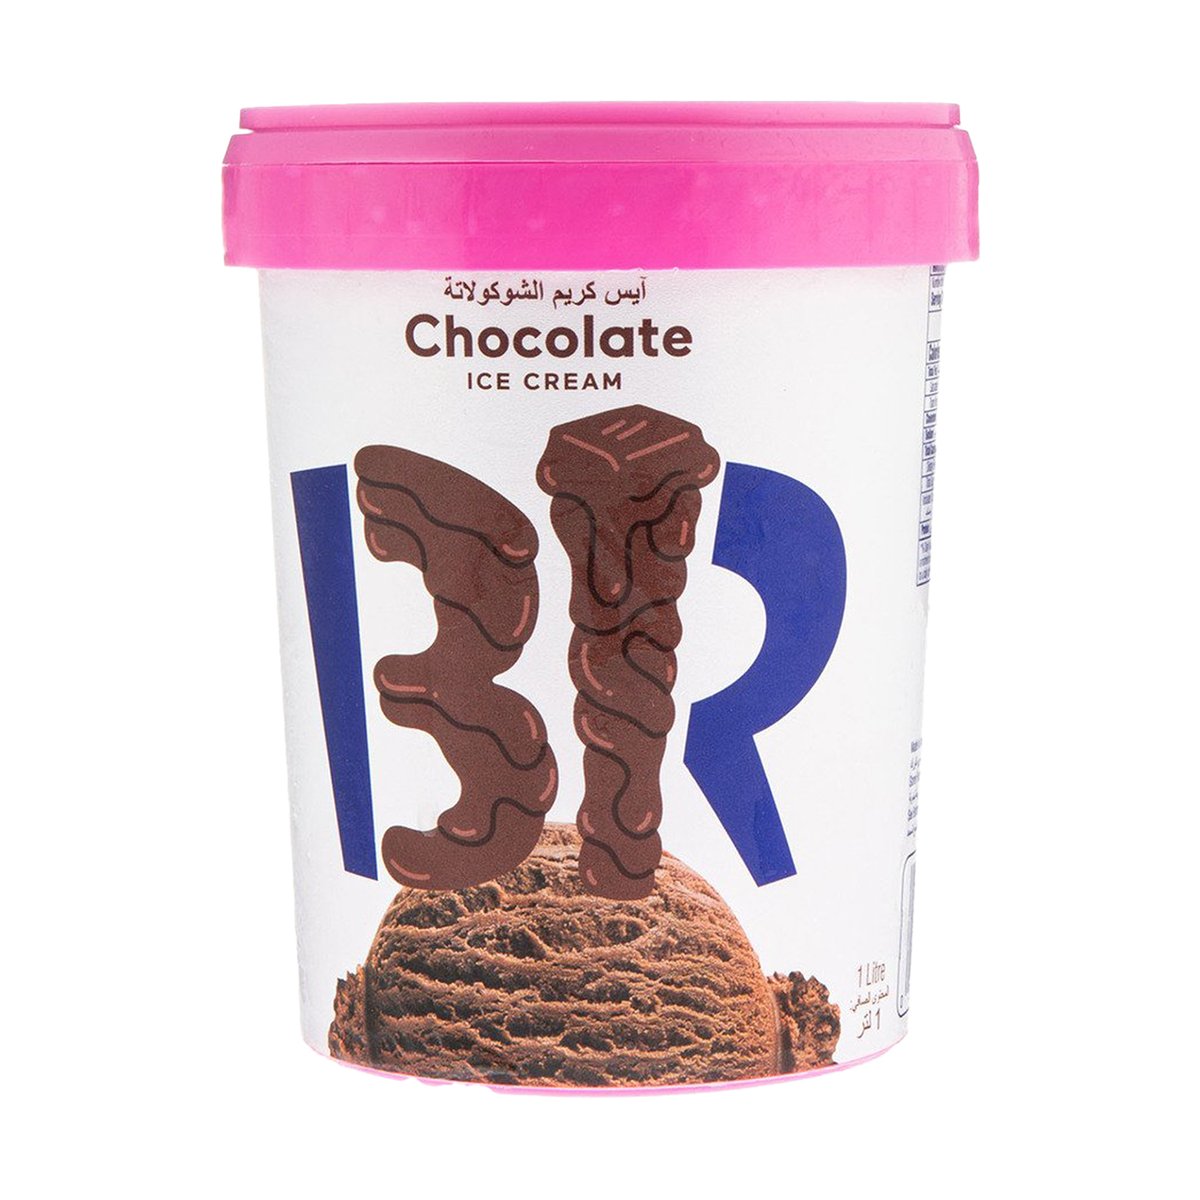 اشتري قم بشراء باسكن روبنز آيس كريم شوكولاتة 1 لتر Online at Best Price من الموقع - من لولو هايبر ماركت Ice Cream Take Home في السعودية